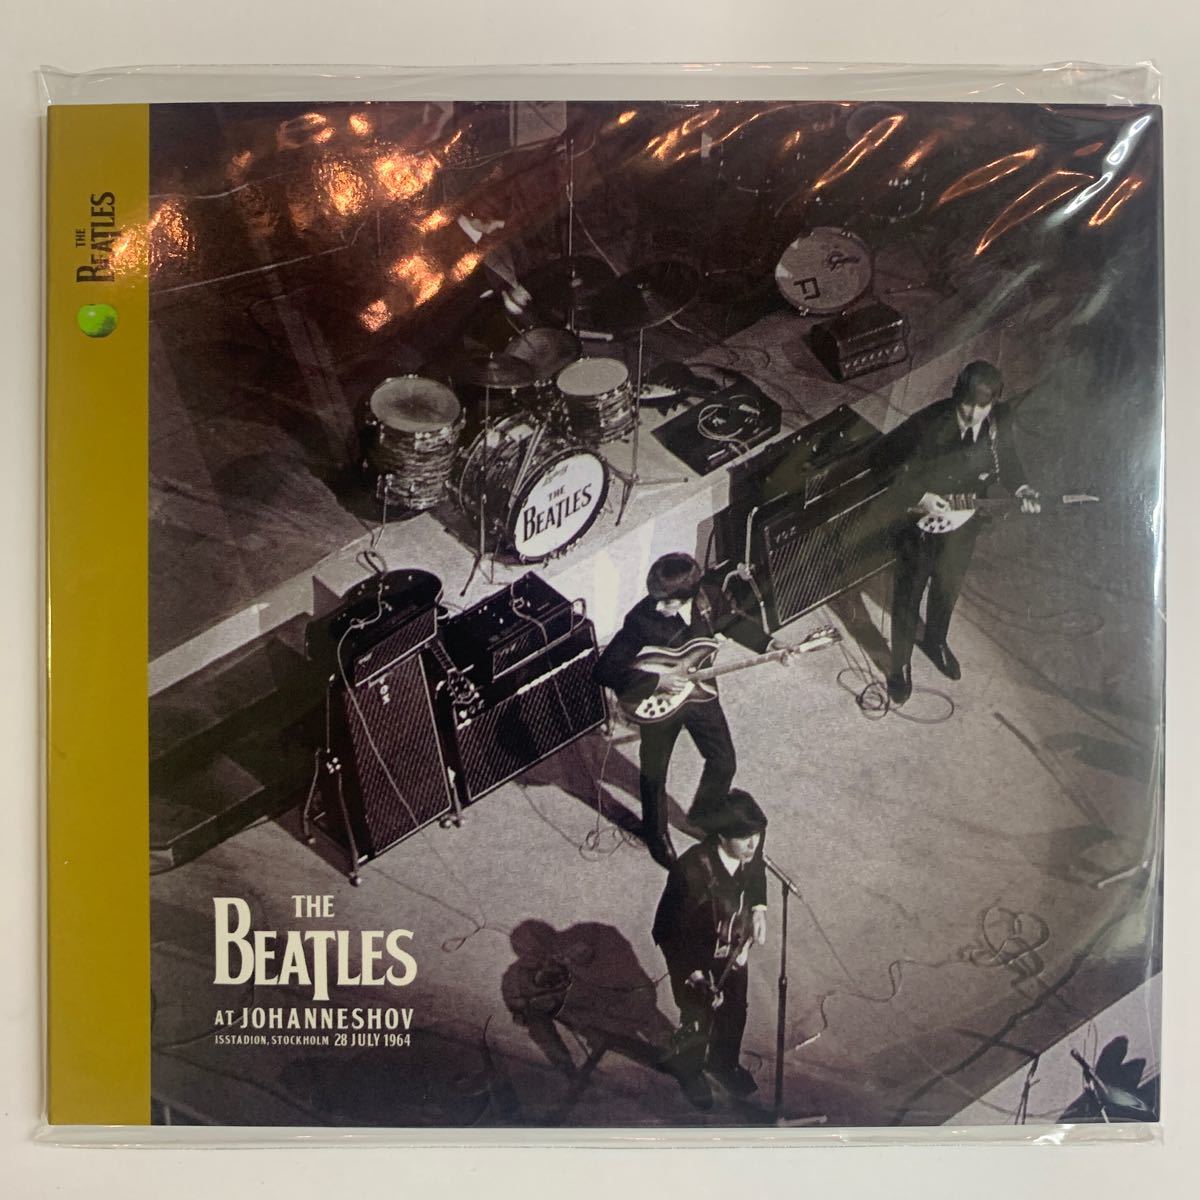 THE BEATLES / AT JOHANNESHOV (CD)1964年7月28日ストックホルム、ヨハネスホフでのライヴを収録。近年発掘された音源です。プレスCD。_画像1